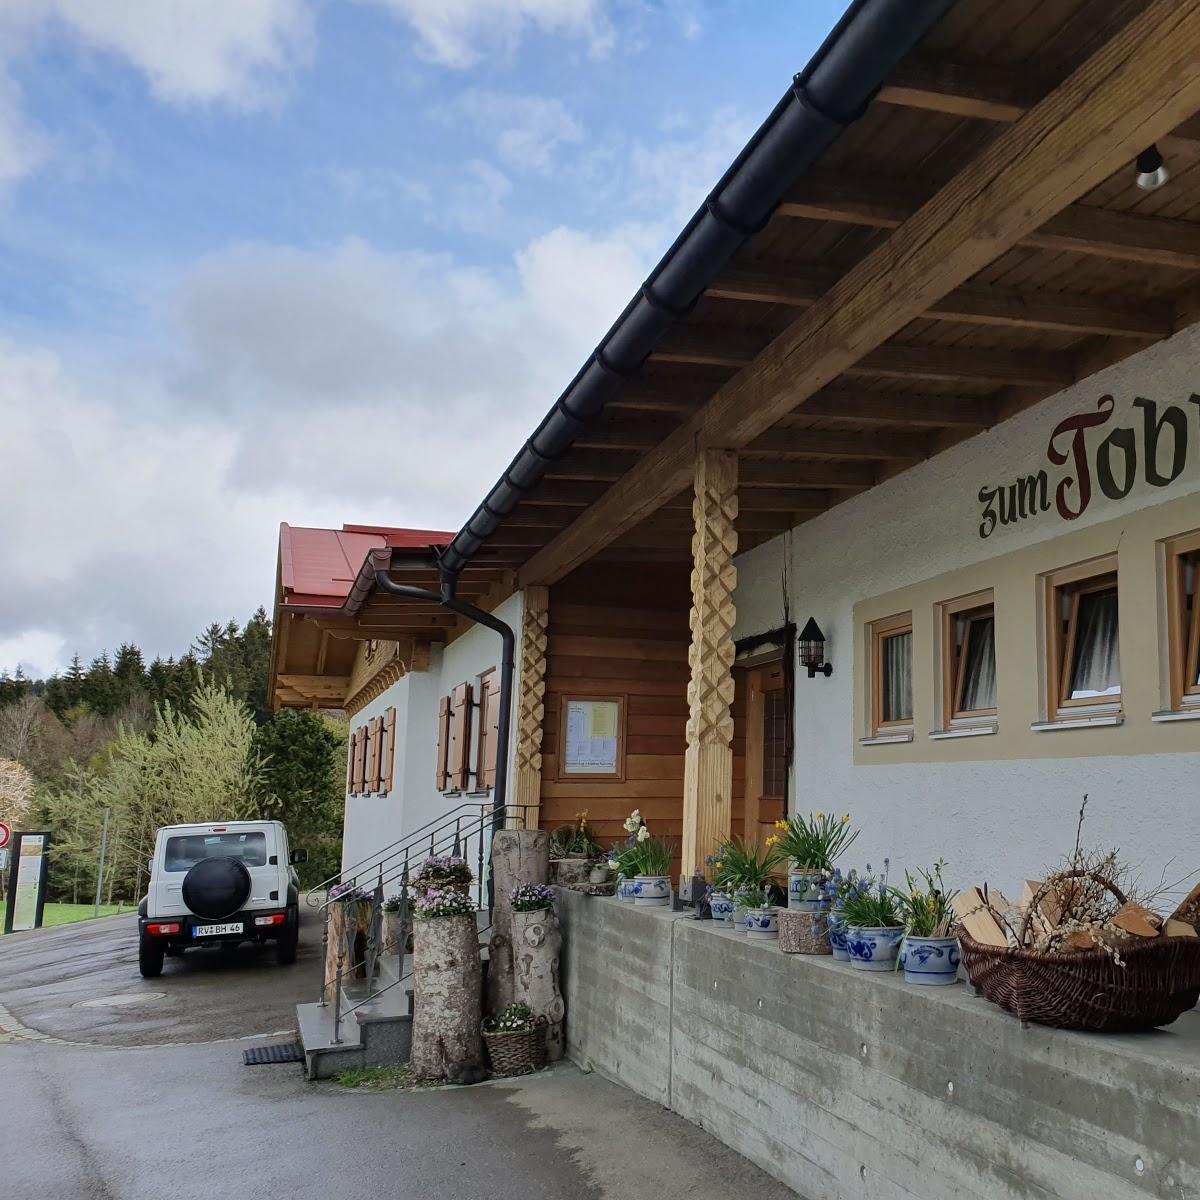 Restaurant "Waldgasthaus Zum Tobias" in  Durach